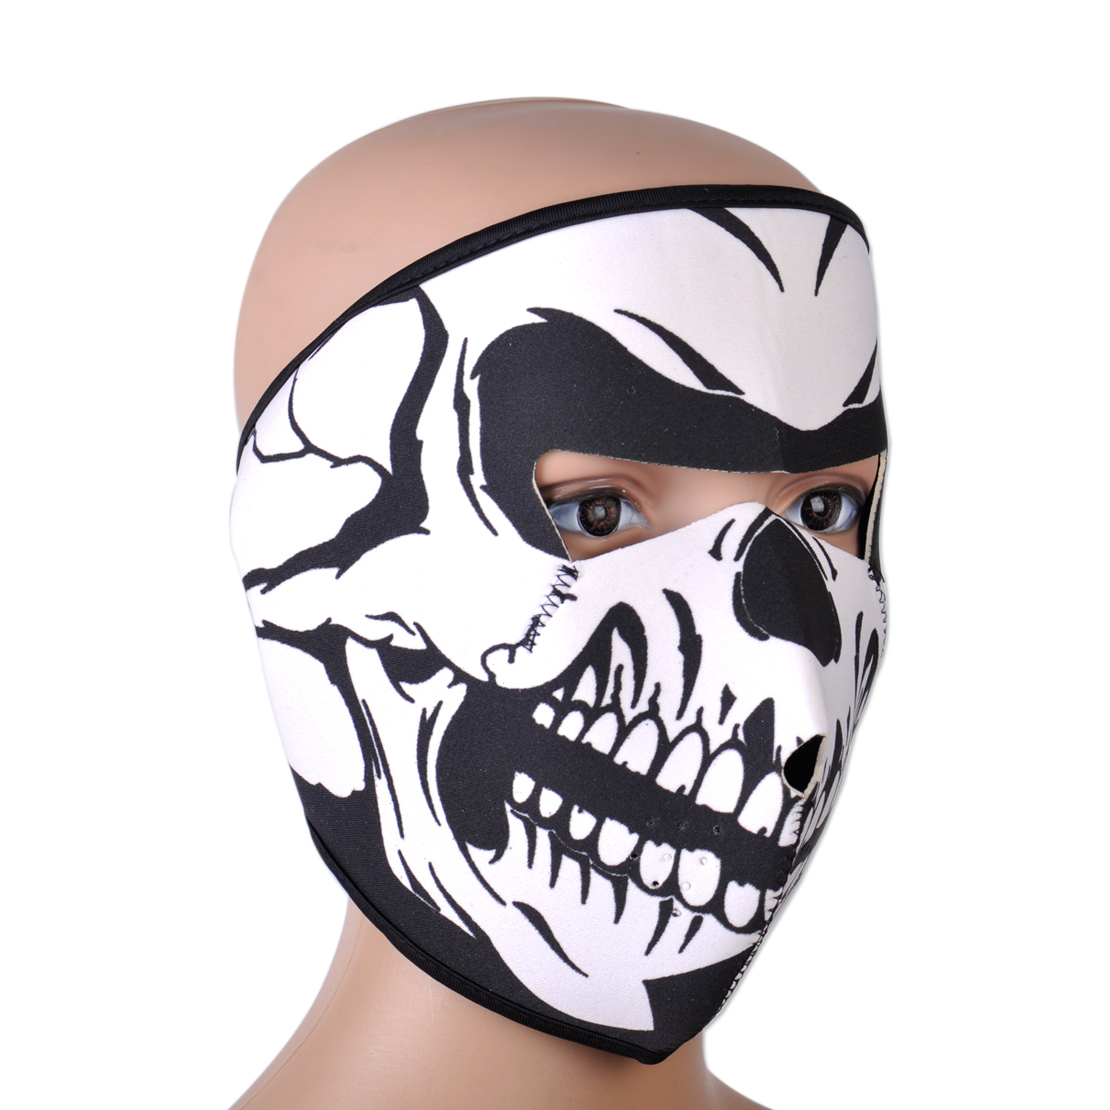 Skull Skeleton Full Face Mask Neoprene Reversible Motorcycle Ski Snow Biker Warm Ebay 9499